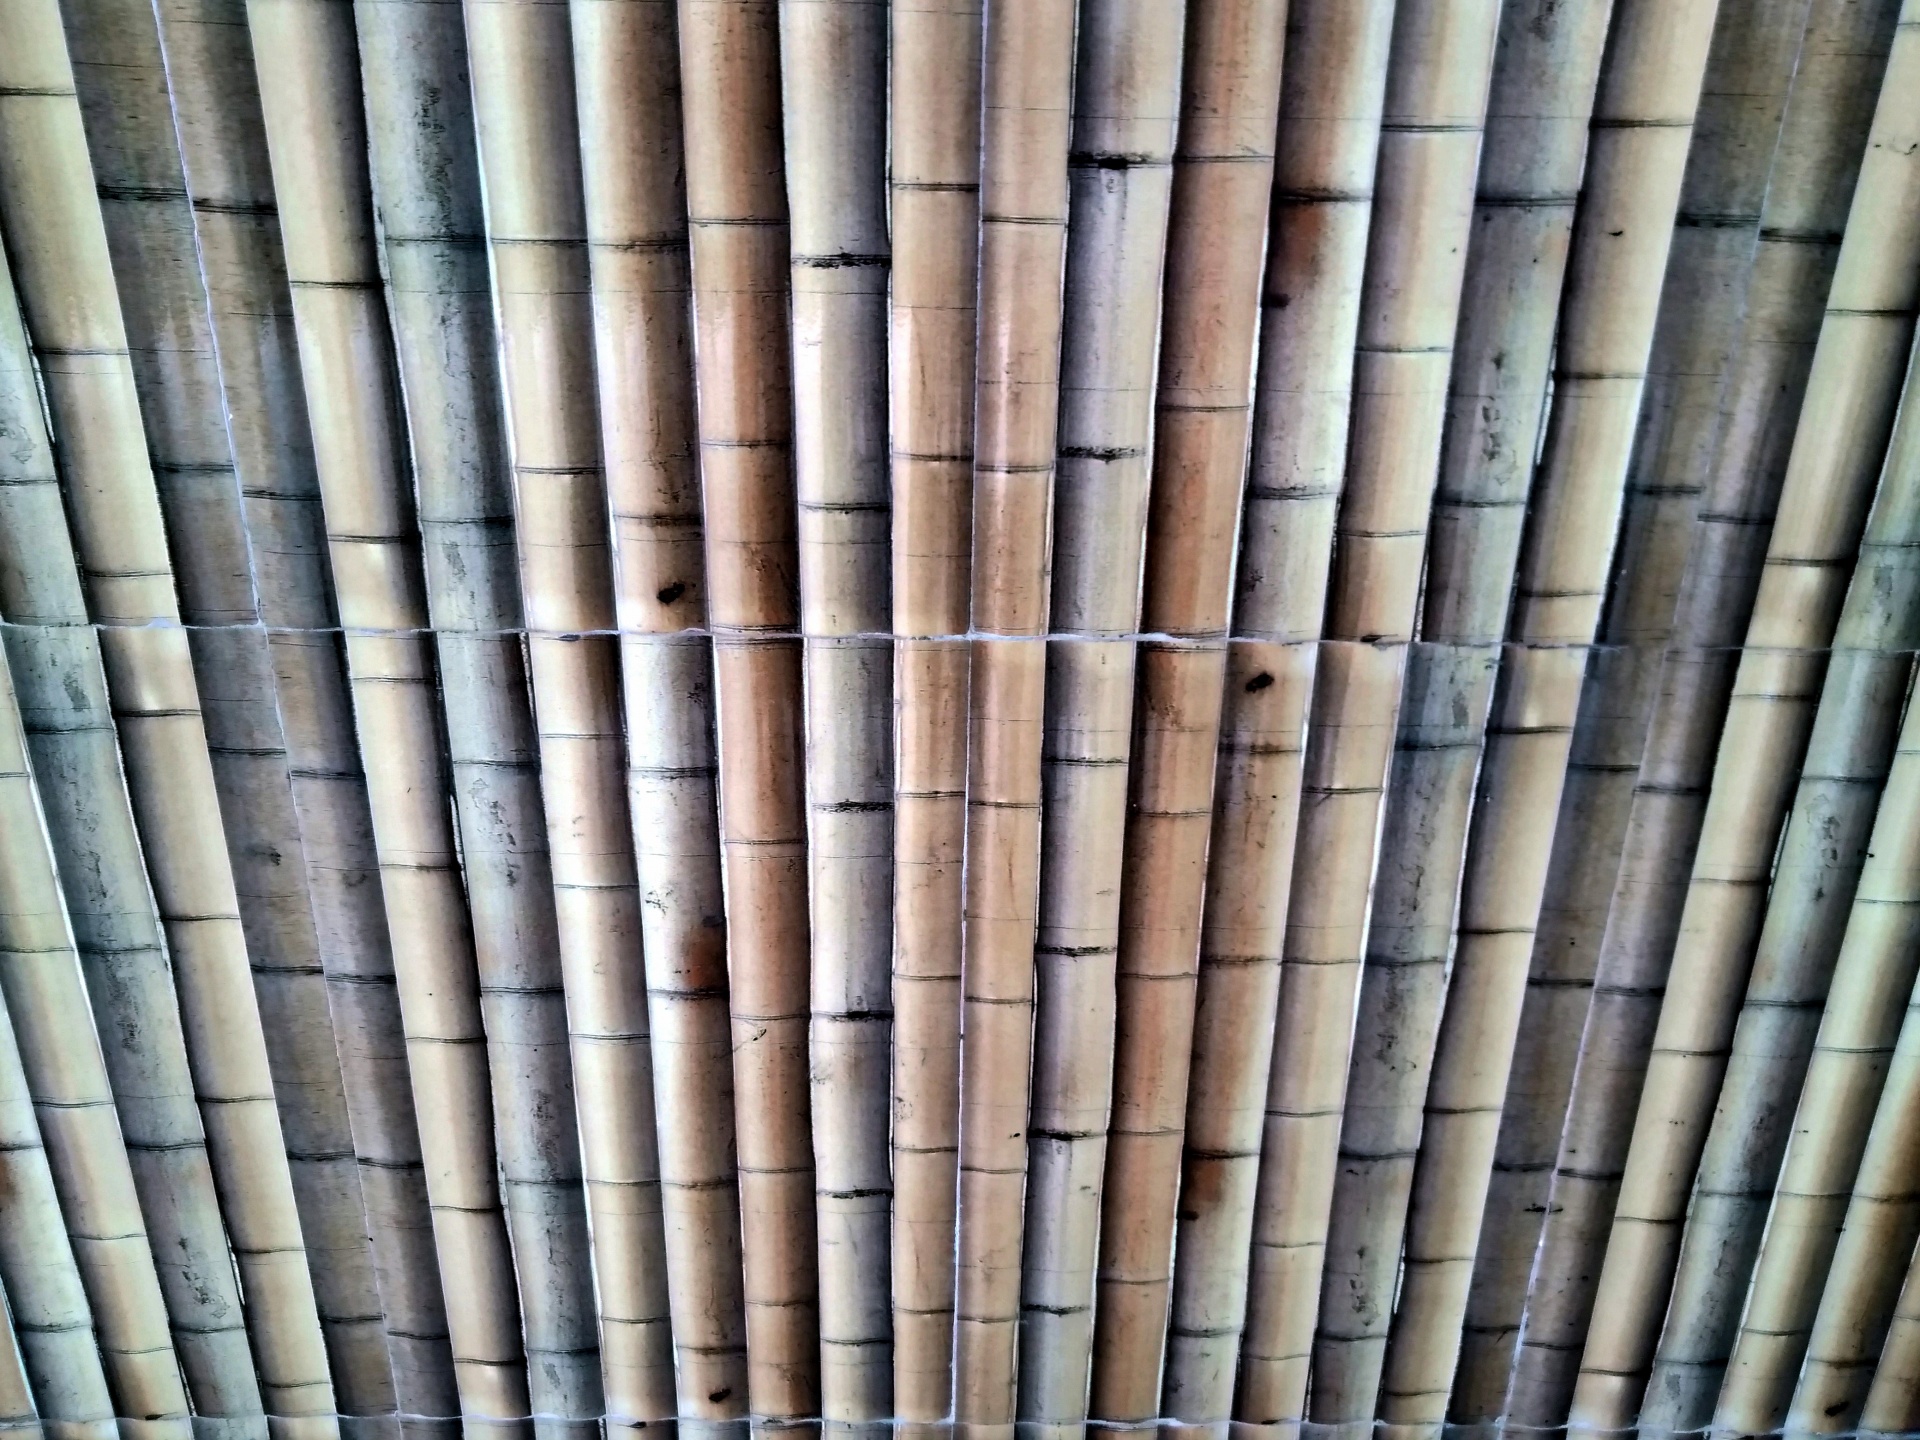 Bamboo Stick Wall